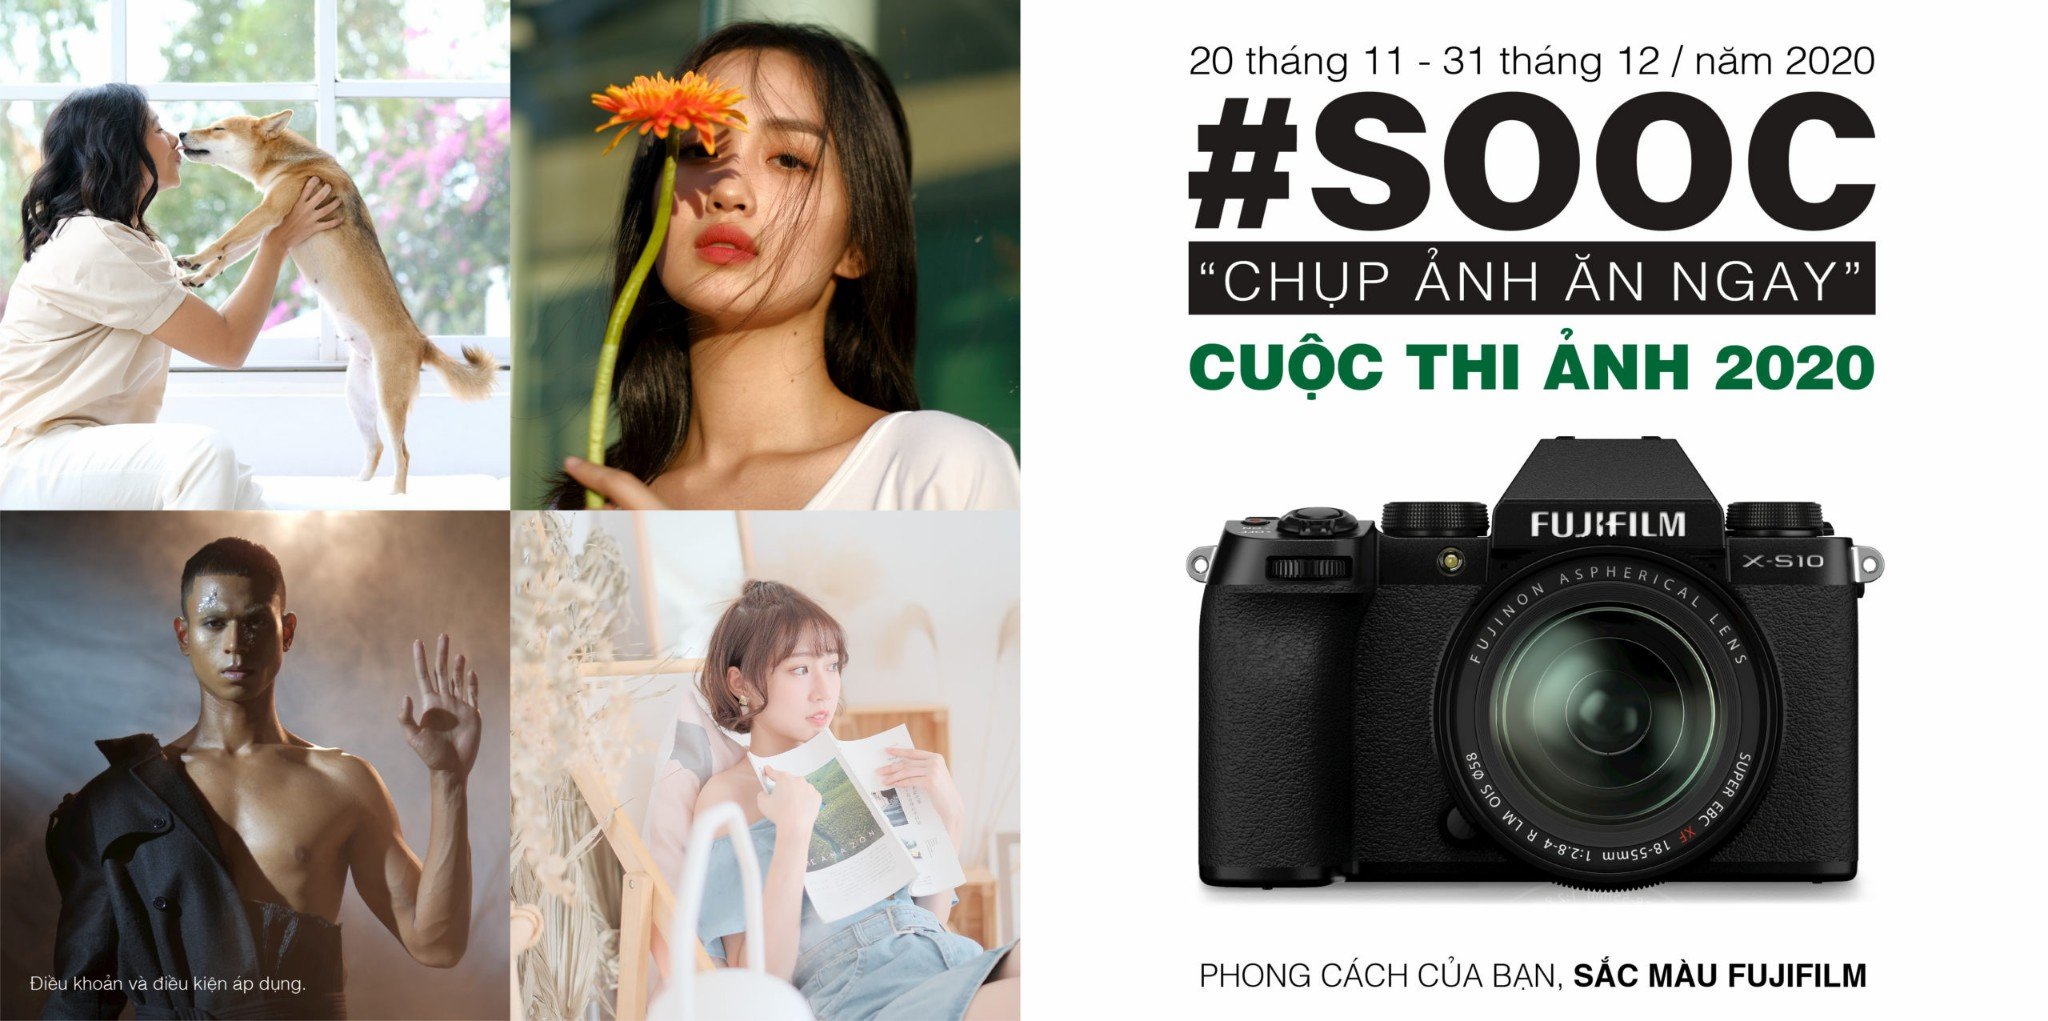 Fujifilm Châu Á - Thái Bình Dương tổ chức cuộc thi ảnh online SOOC với phần quà cực khủng